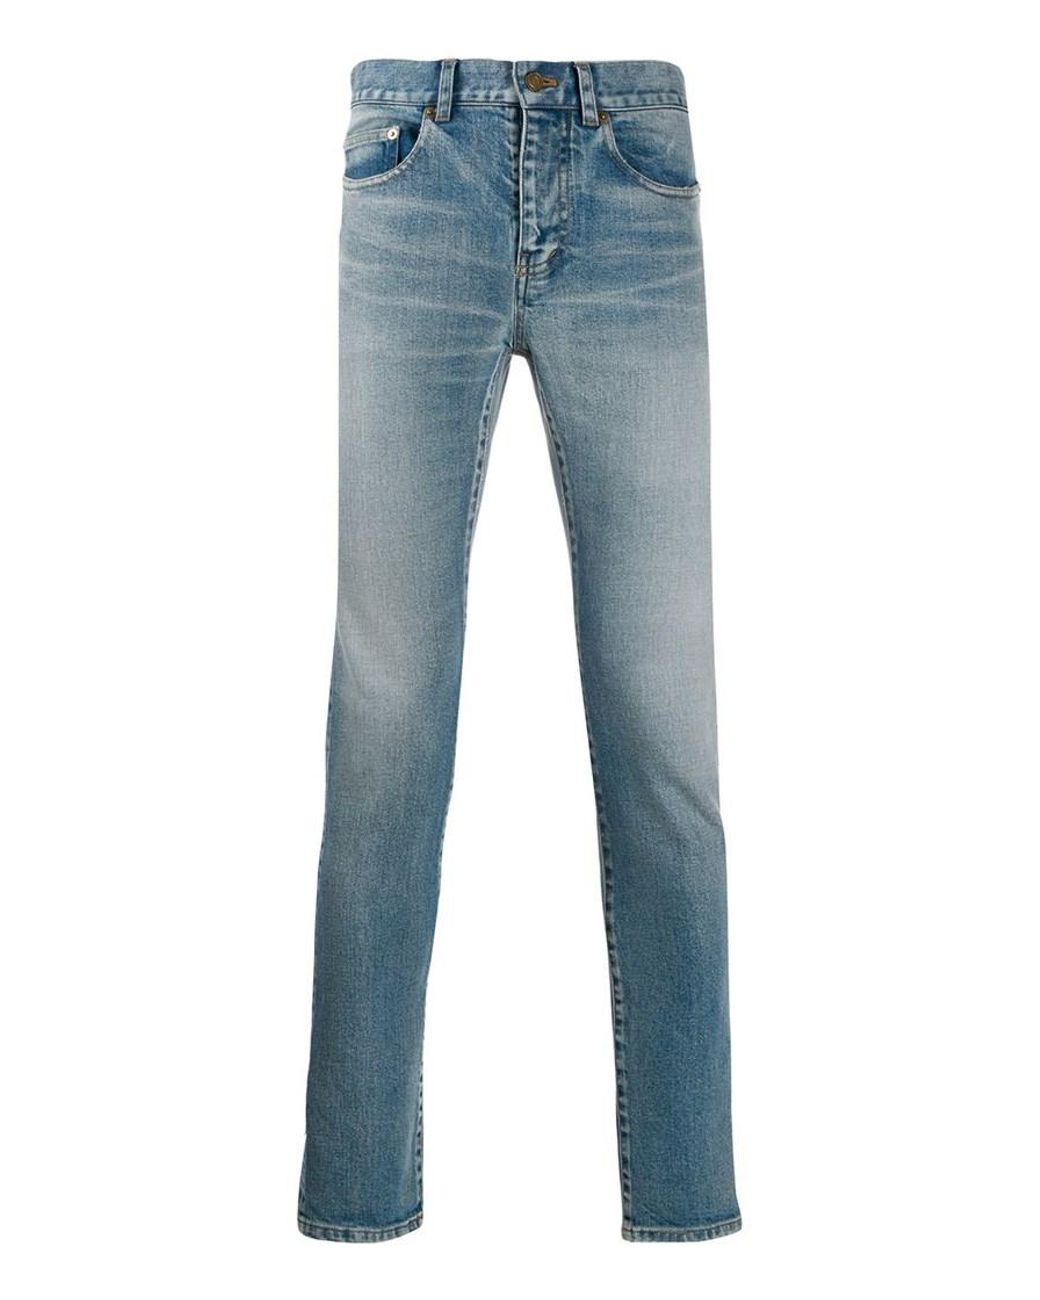 Saint Laurent Denim Skinny Jeans in Blue for Men - Lyst